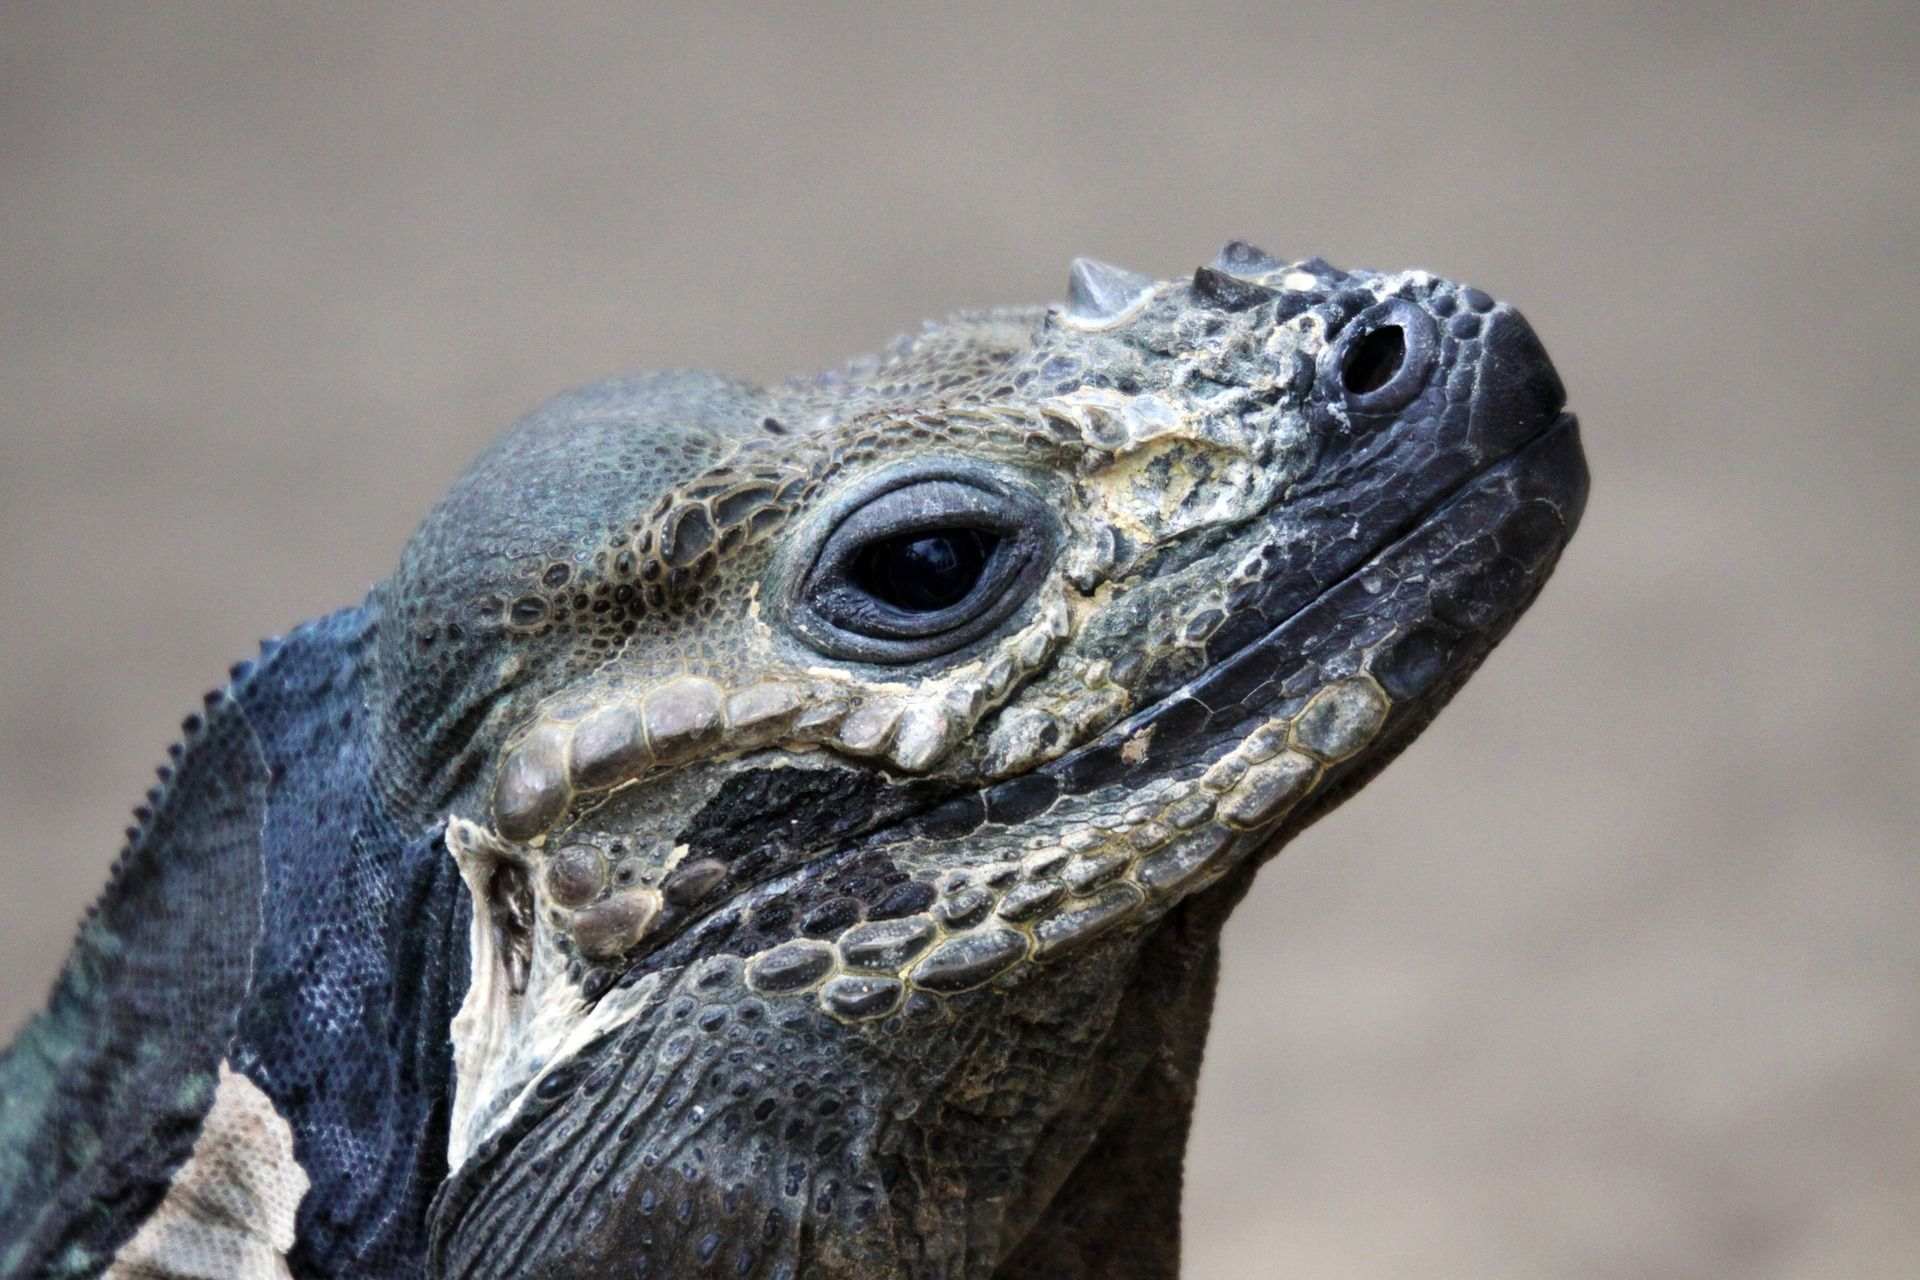 Nunca habrás sentido tanta empatía por las iguanas